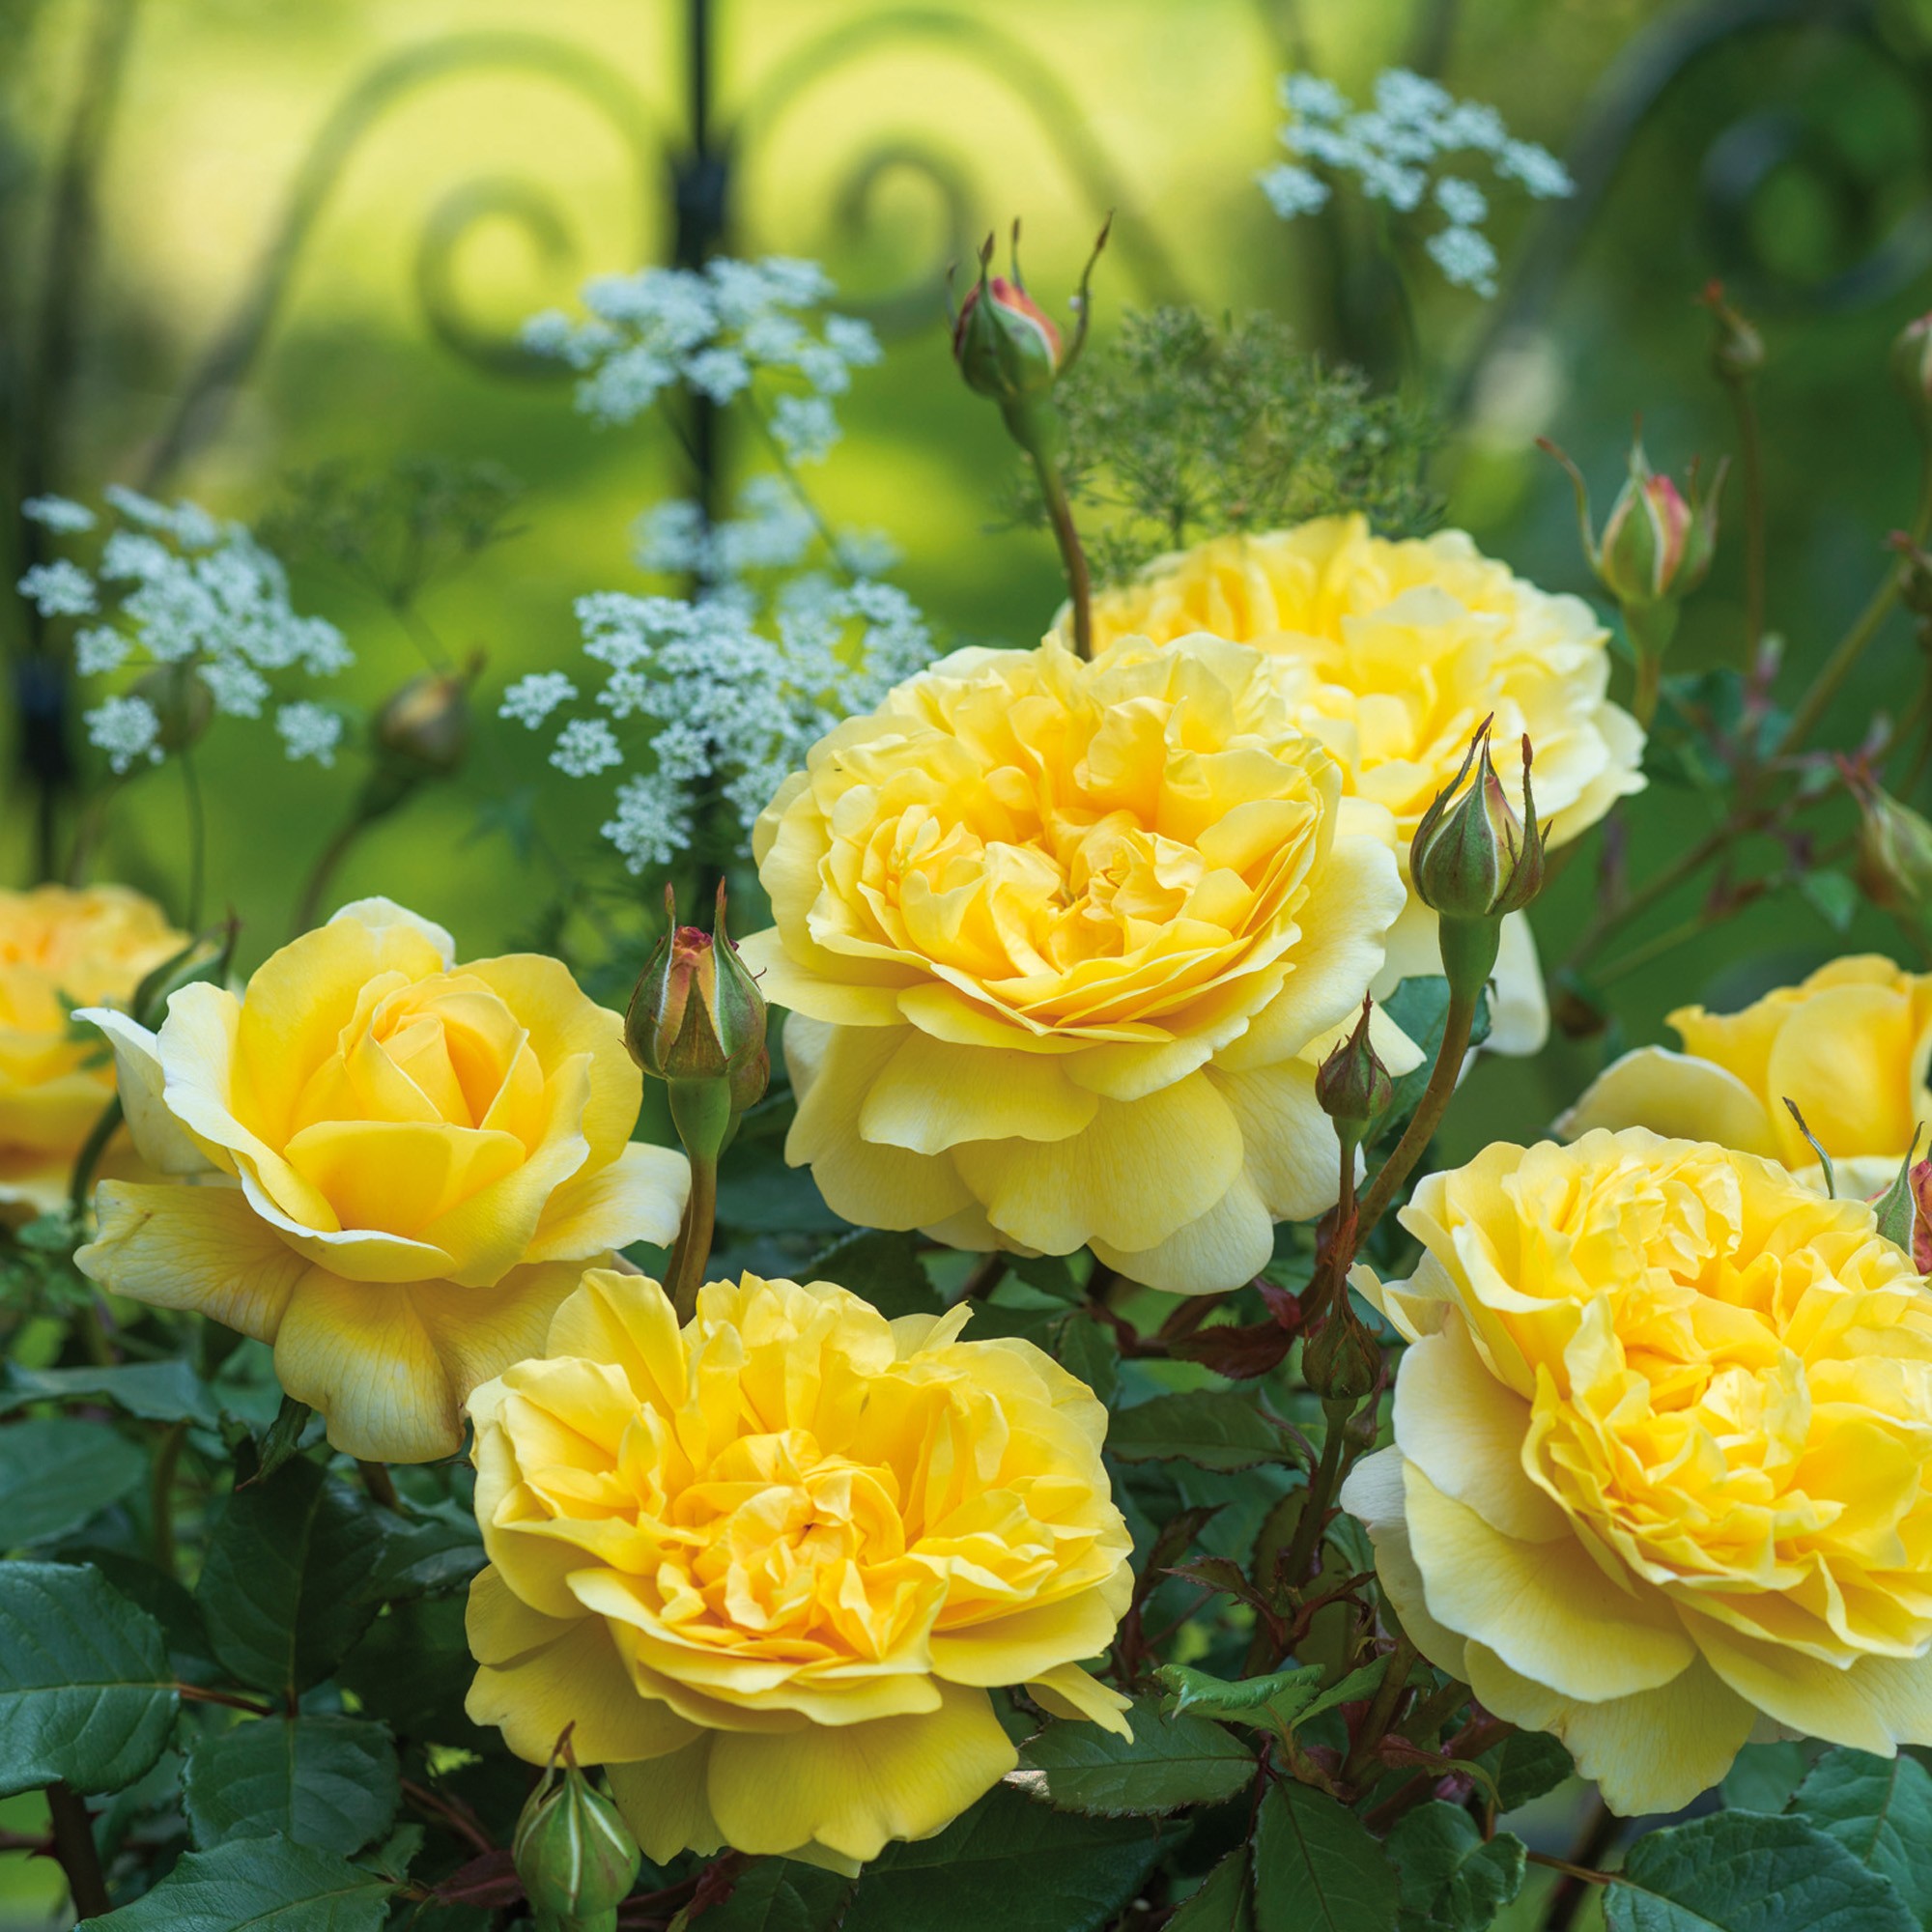 Hoa hồng bụi The Poet's Wife TAG DAVID AUSTIN cao 1.2m, hoa 12.7cm, vàng,  cực thơm, chùm